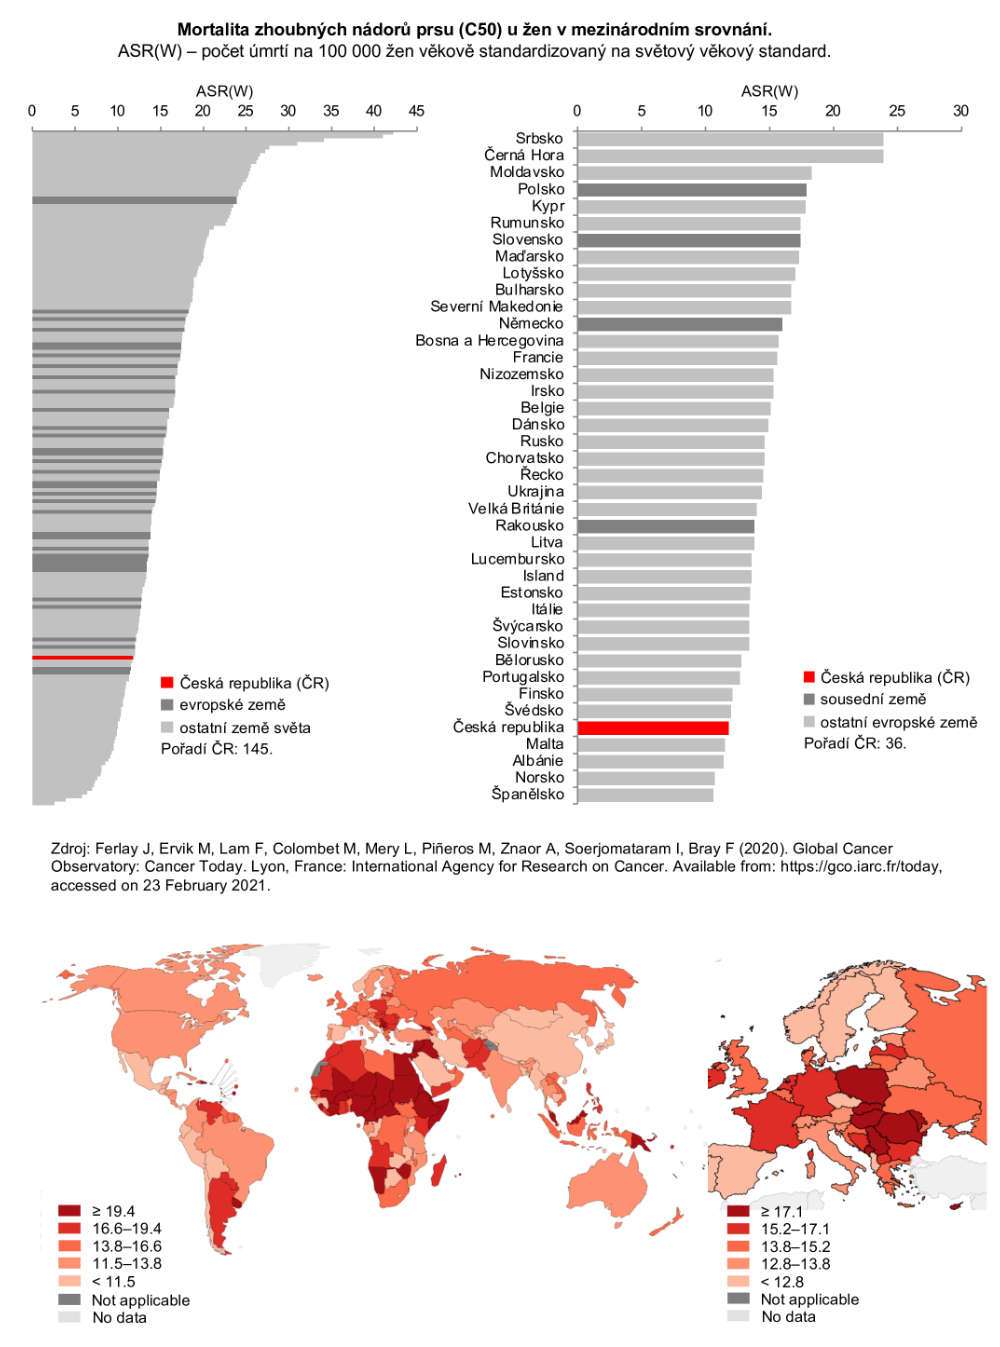 Obrázek 2: Mortalita zhoubných nádorů prsu v mezinárodním srovnání. ASR(W) – počet zemřelých na nádor na 100 000 žen věkově standardizovaný na světový věkový standard (Zdroj dat: GLOBOCAN 2020)